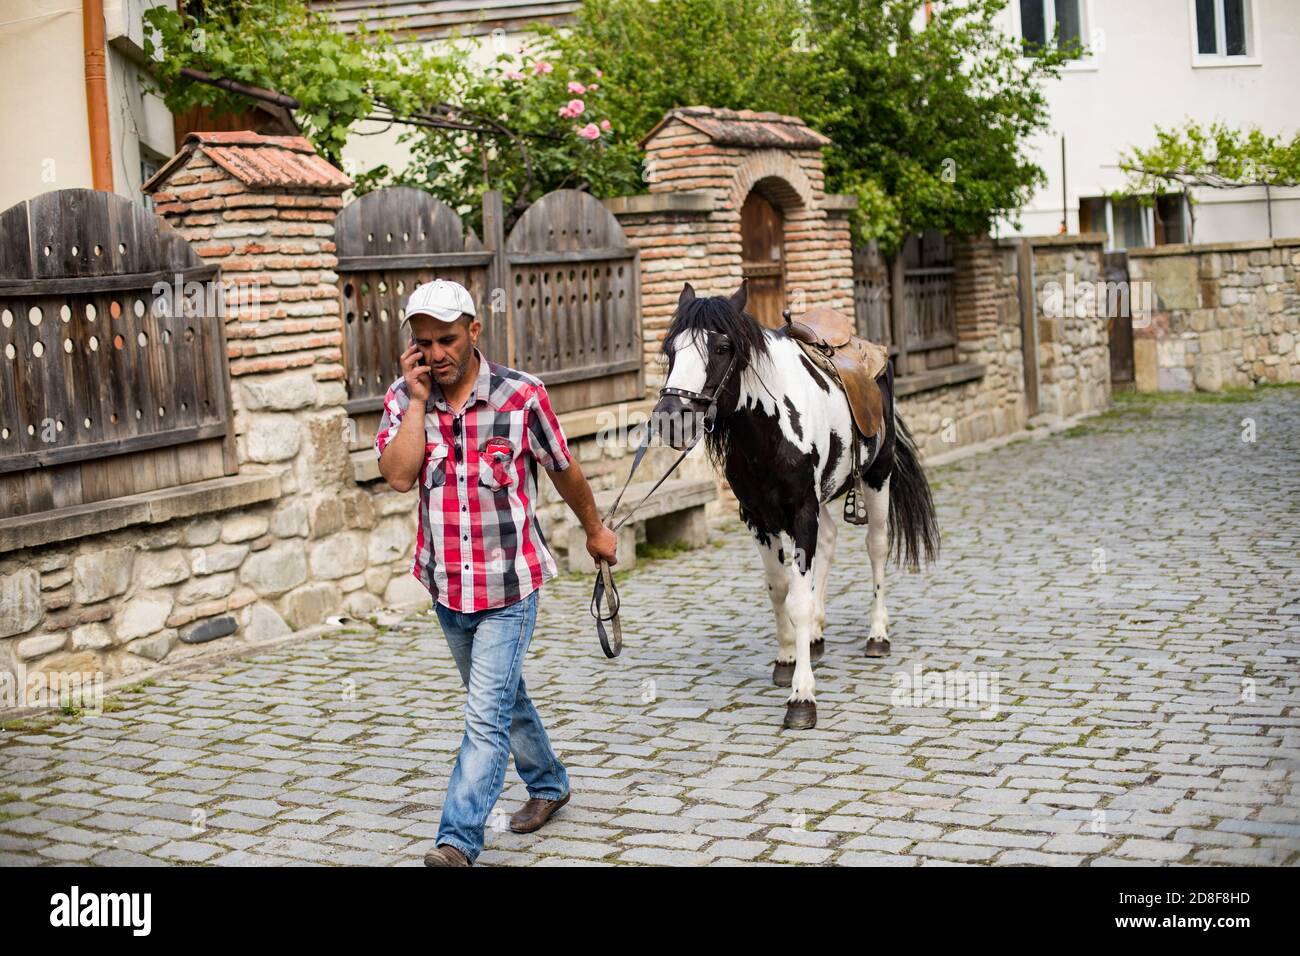 Ein Mann, der mit dem Handy spricht, führt sein Pferd durch die kopfsteingepflasterten Straßen von Mzcheta, Georgien, Kaukasus, Osteuropa. Stockfoto